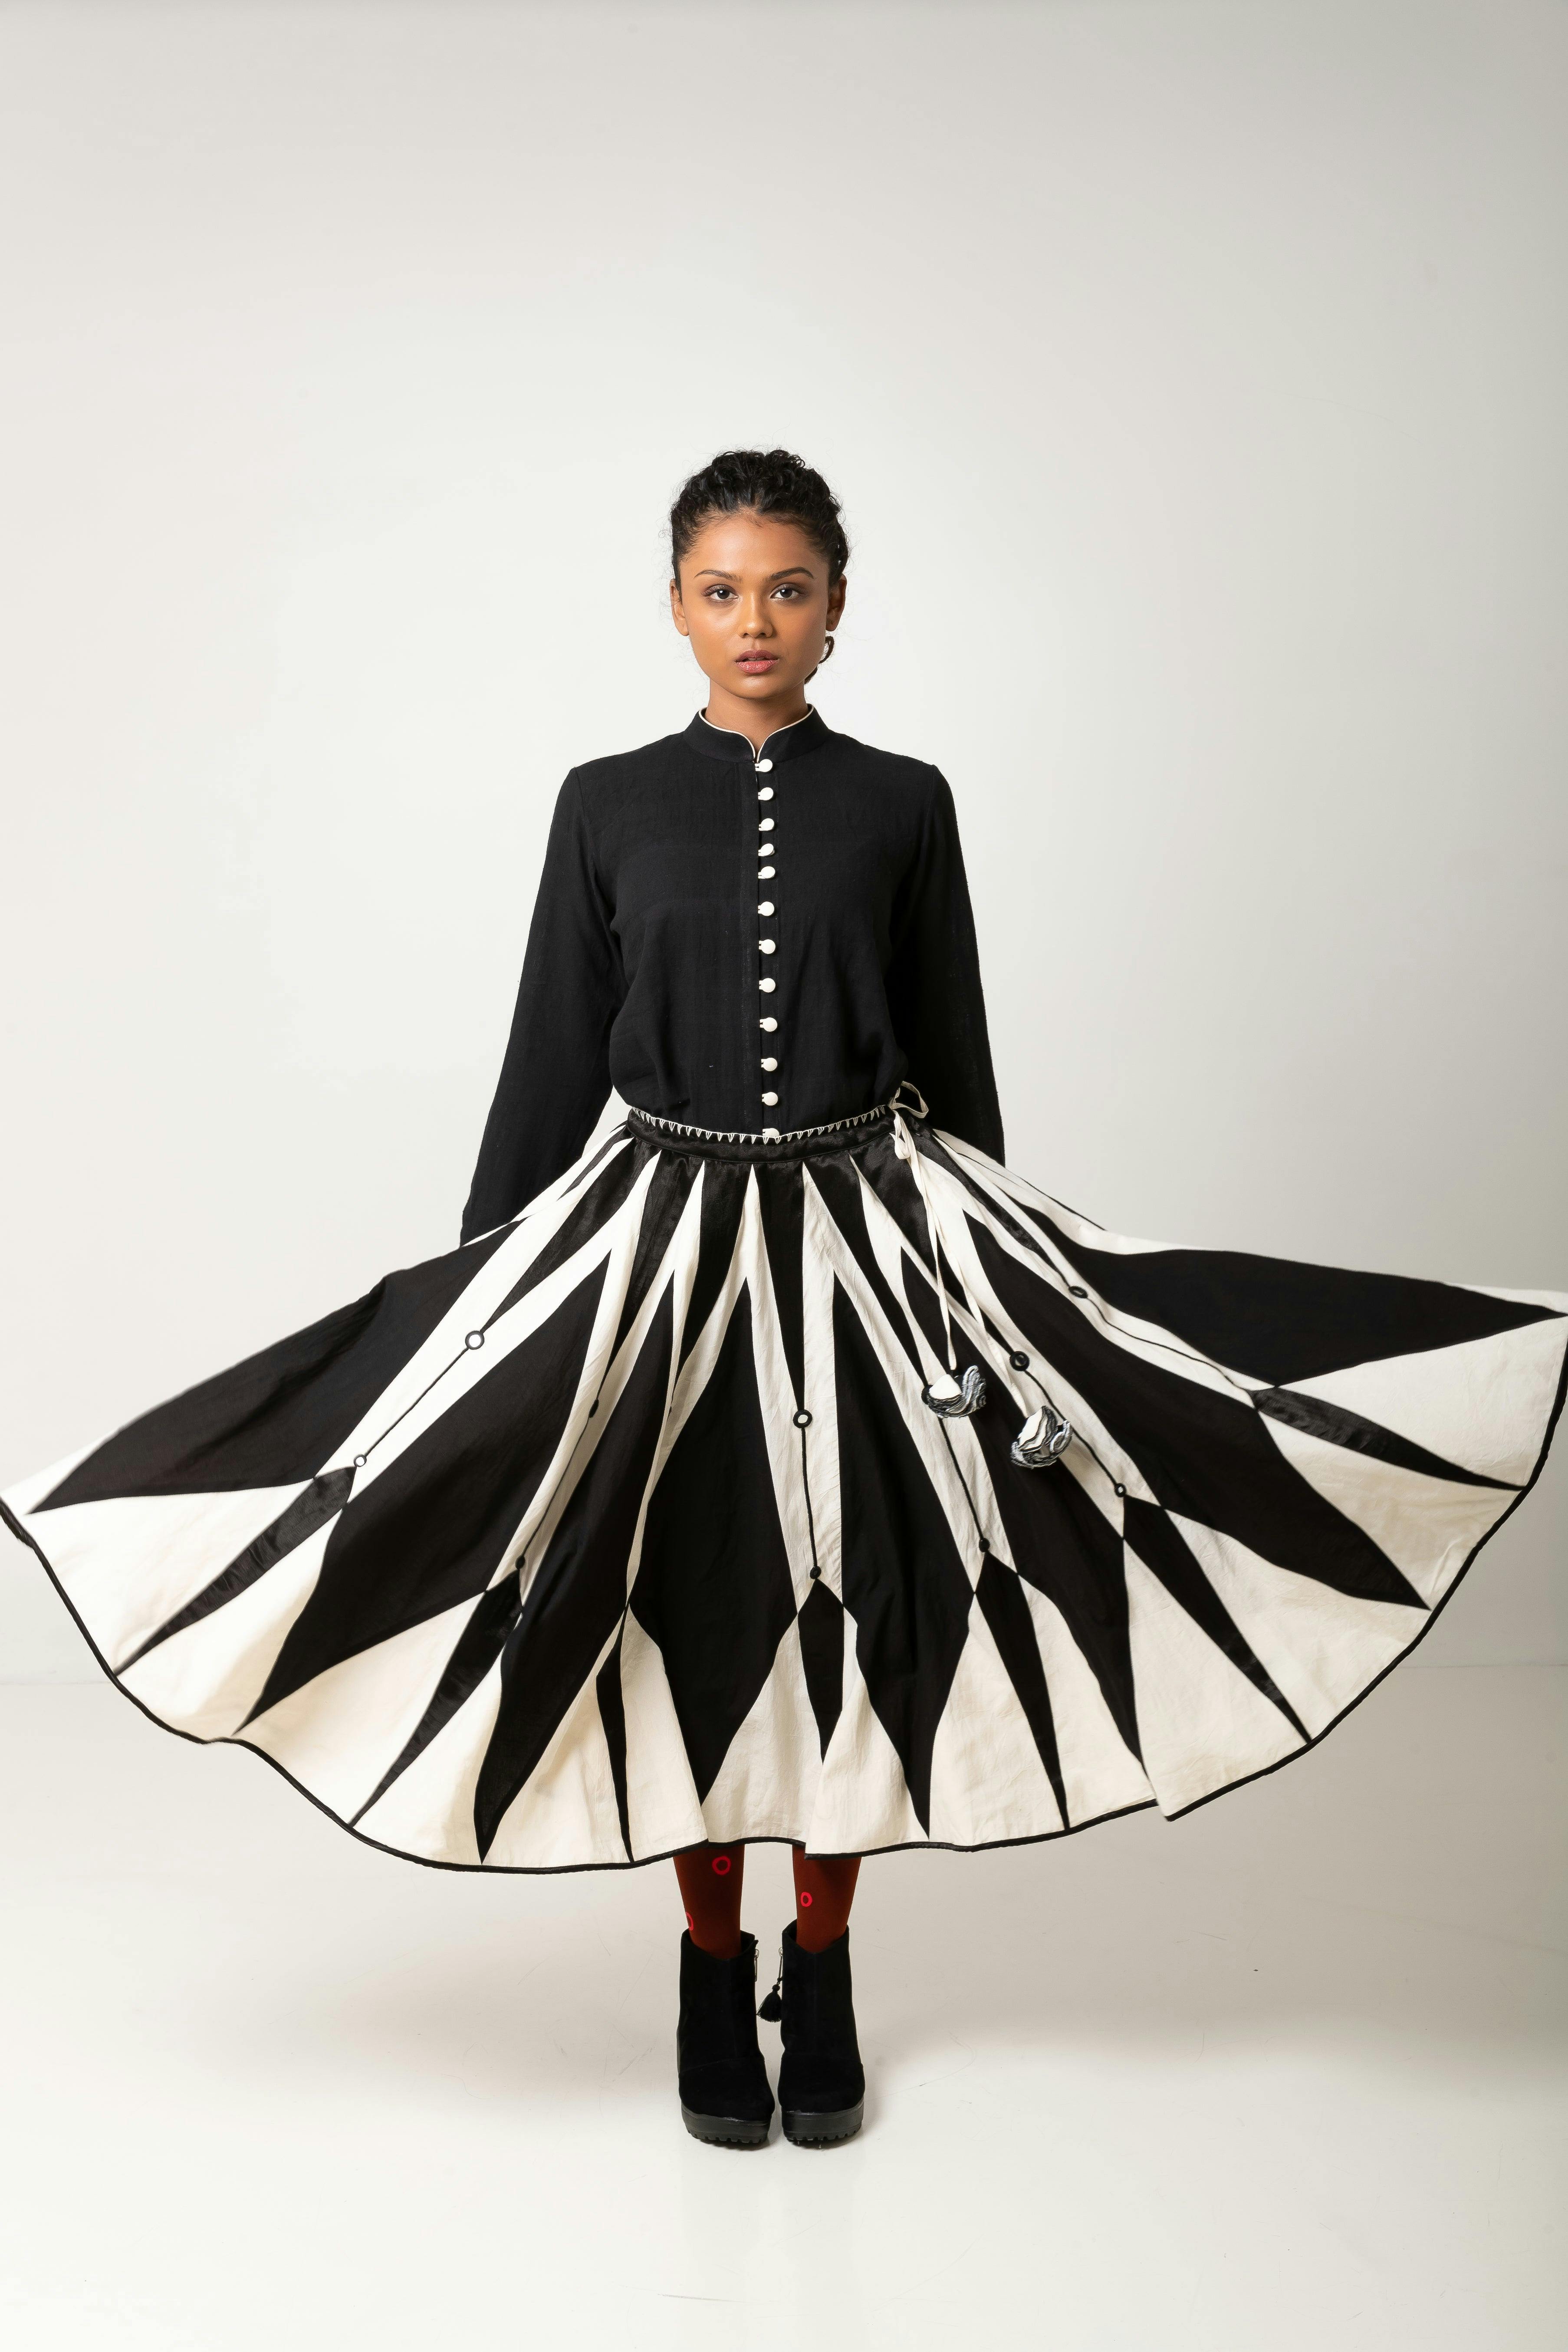 Venus Skirt, a product by Ka-sha